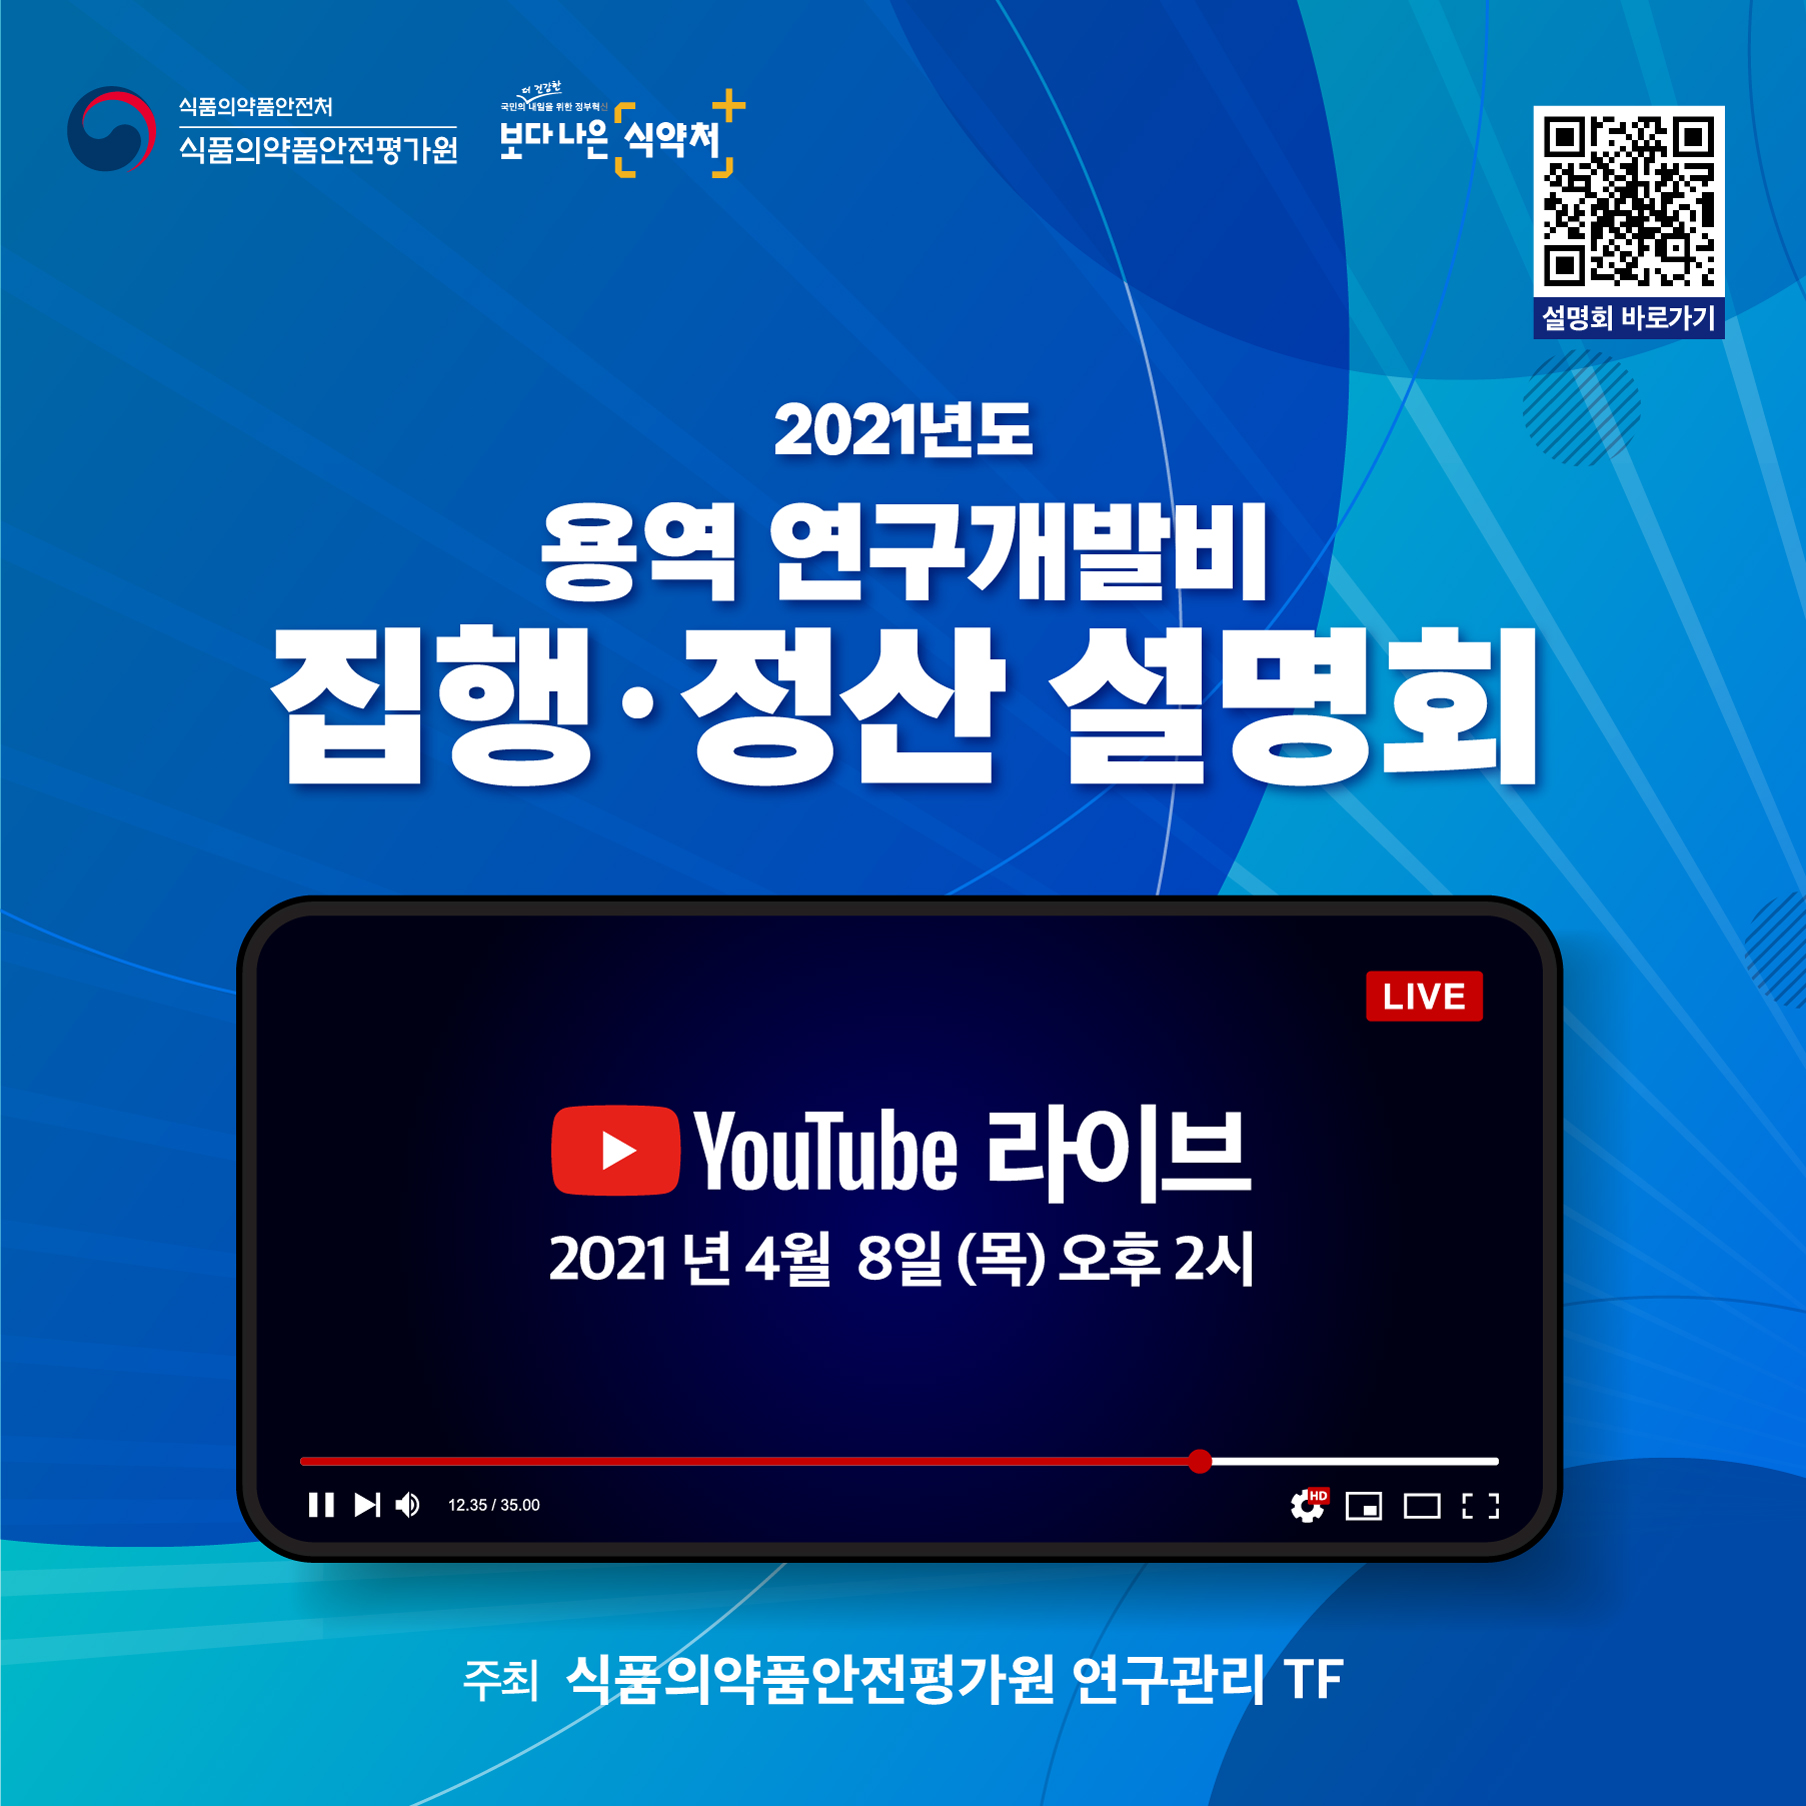 식약처 「2021년도 용역 연구개발비 집행·정산 온라인 설명회」 개최 안내